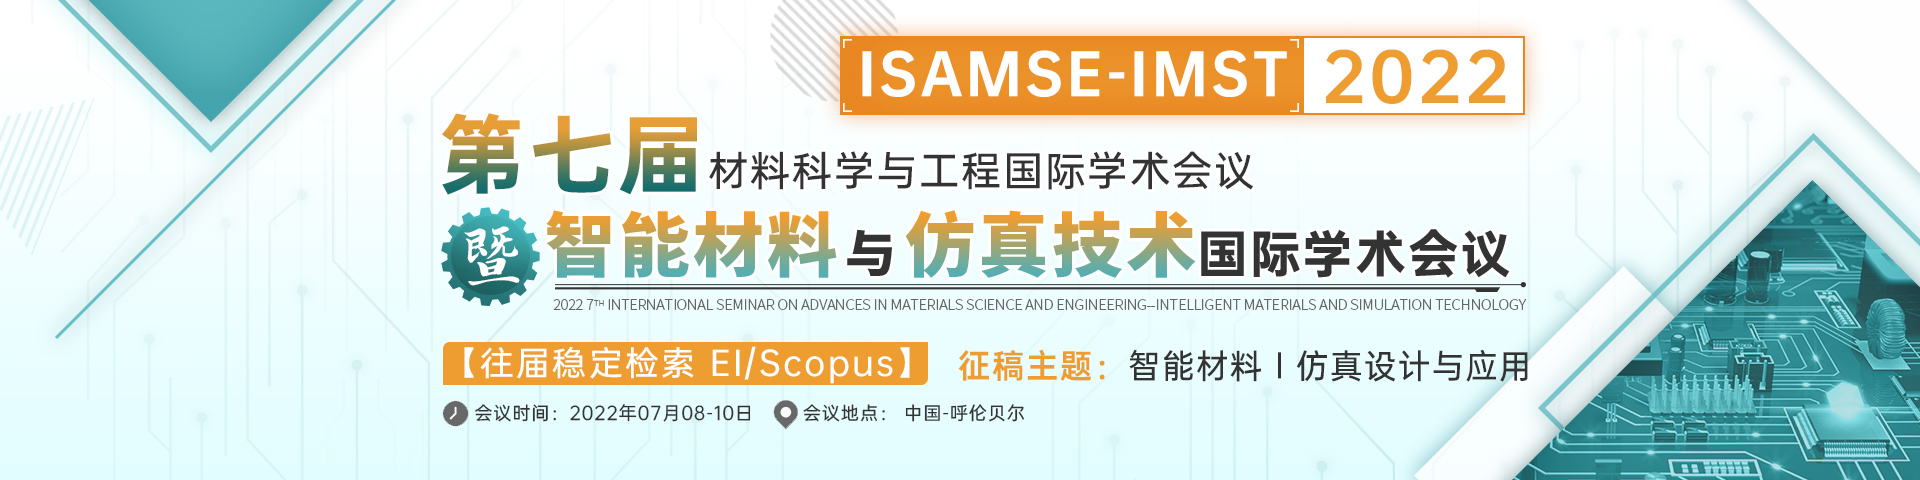 第七届材料科学与工程国际学术会议暨智能材料与仿真技术国际学术会议（ISAMSE-IMST 2022)